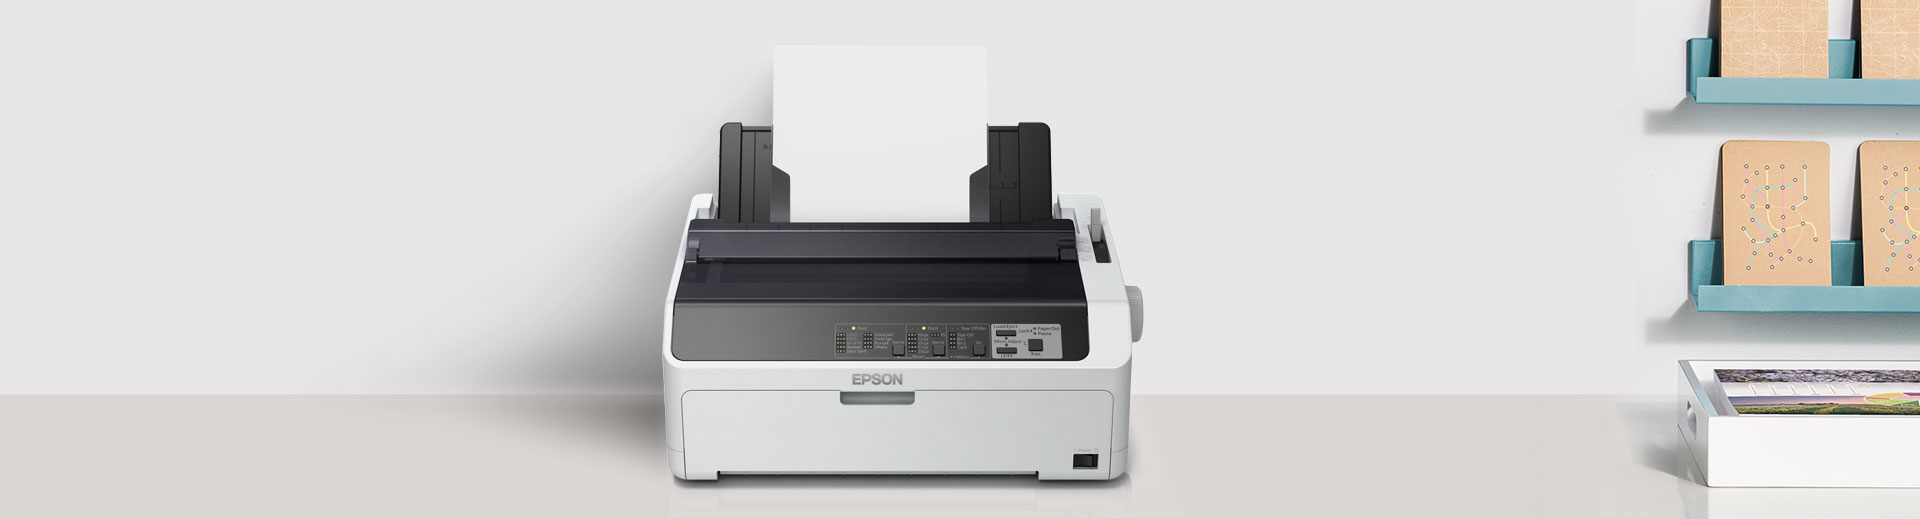 ข้อ 41. เครื่องพิมพ์ชนิด Dot Matrix Printer แบบแคร่สั้น ราคา 24,000 บาท